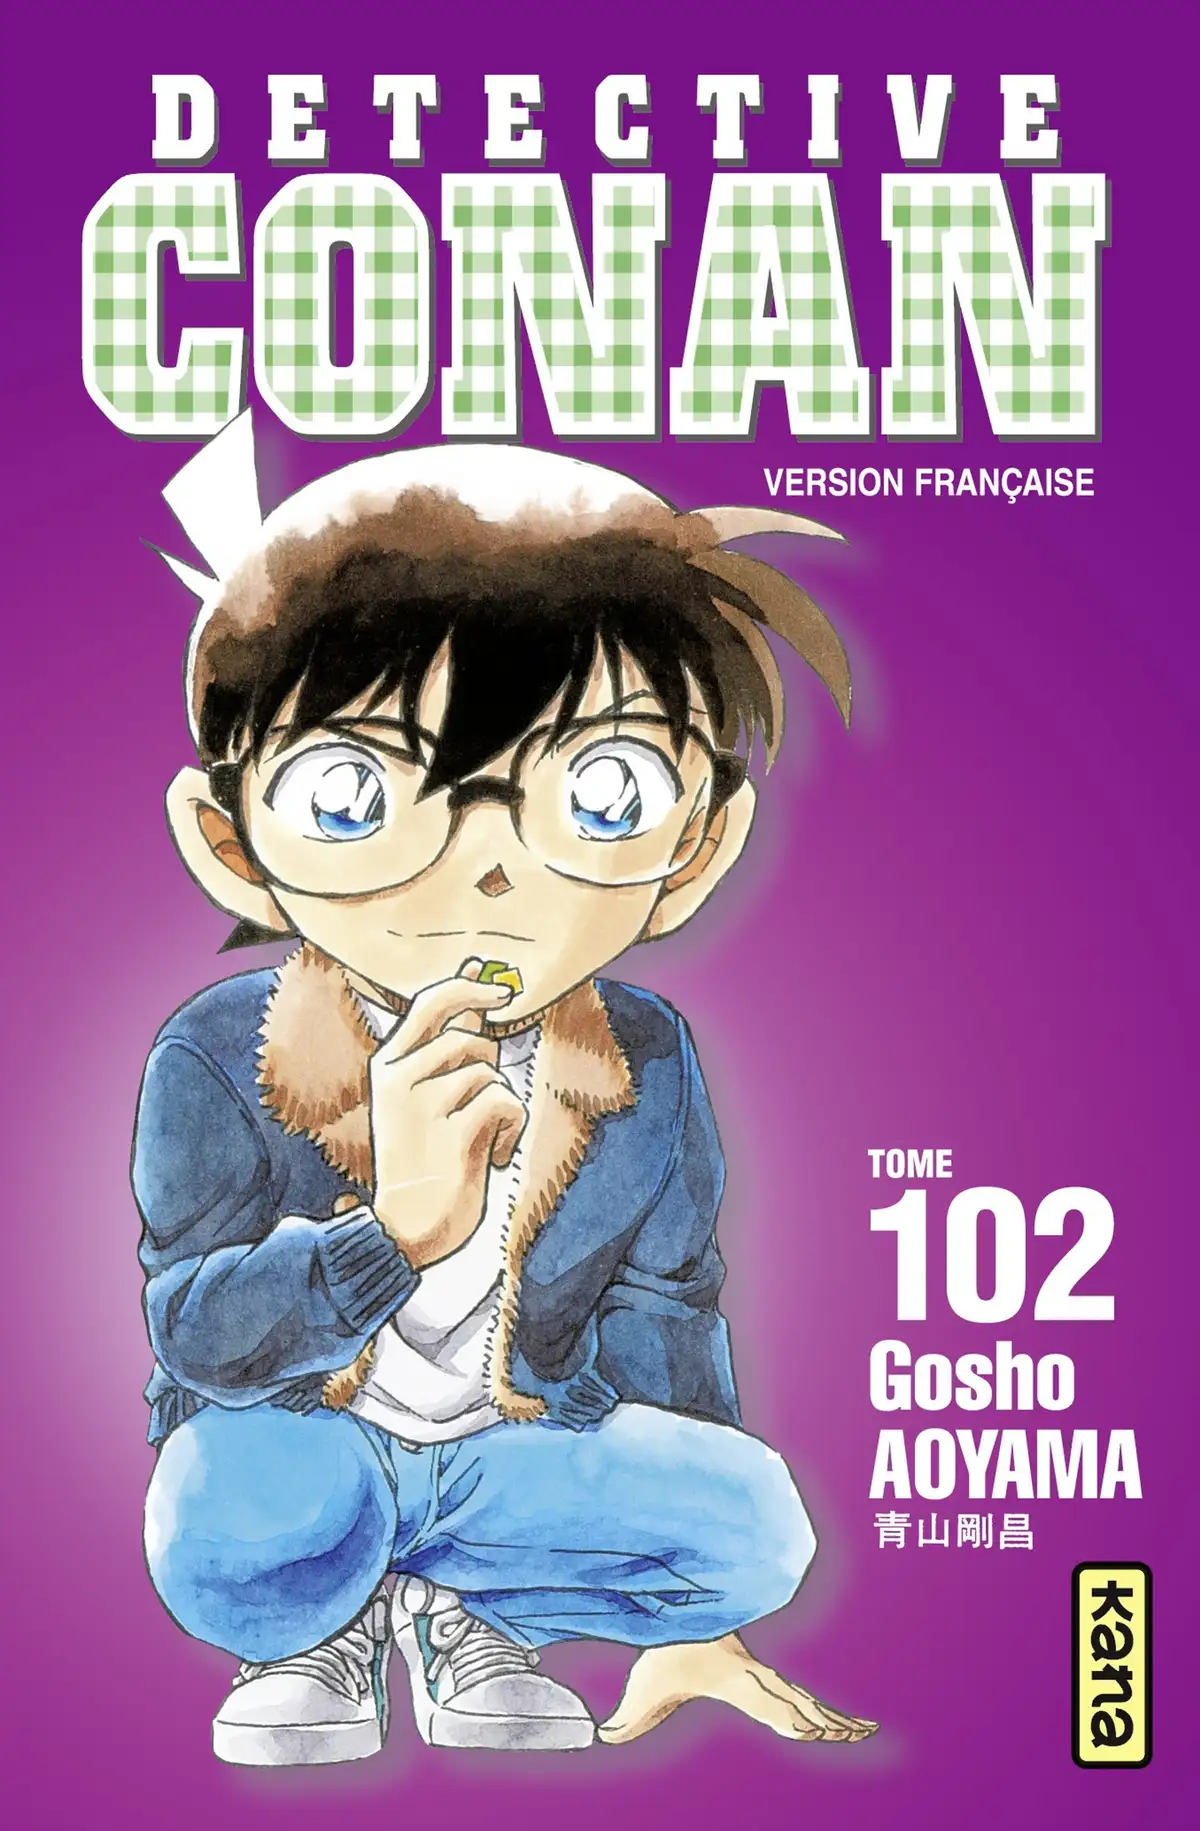 Détective Conan Volume 102 page 1